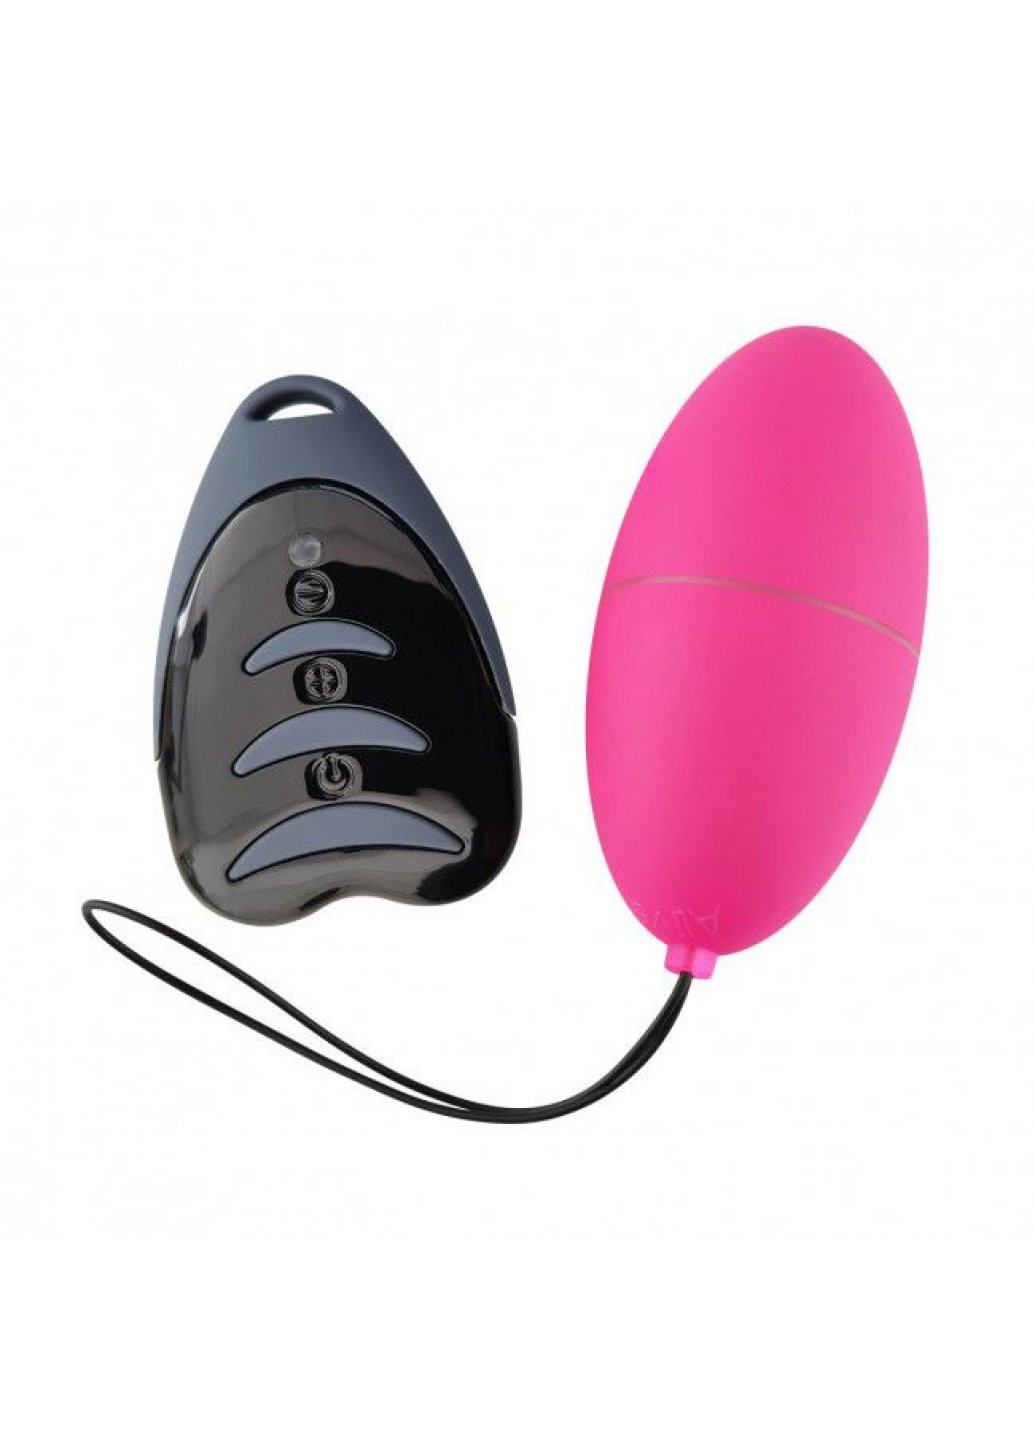 Виброяйцо Magic Egg 3.0 Pink с пультом ДУ, на батарейках Alive (259450112)